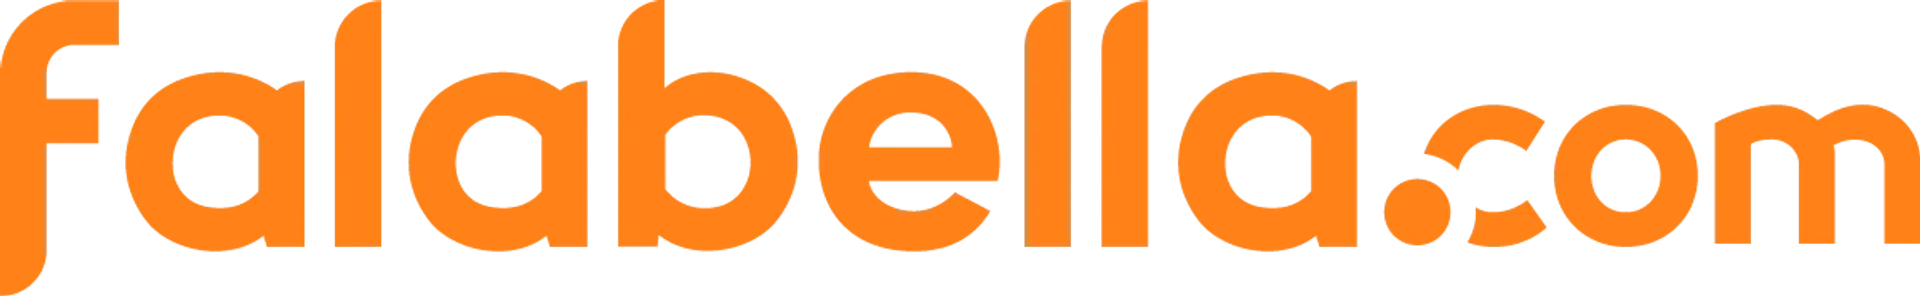 Logo de Falabella